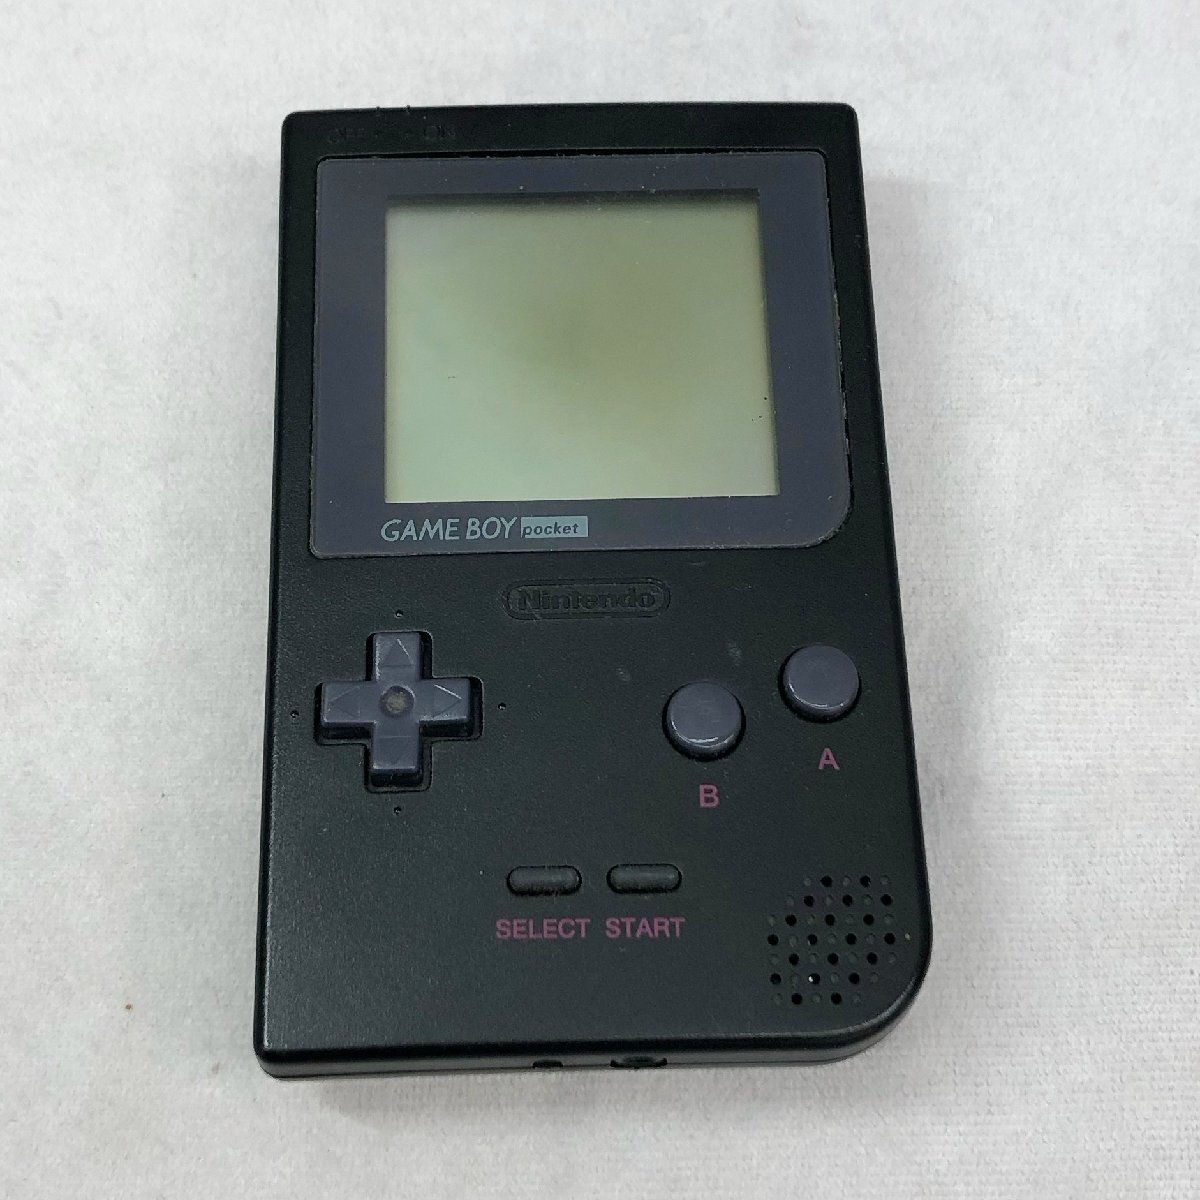  работоспособность не проверялась Junk nintendo Nintendo GAME BOY Game Boy кассета суммировать итого 8 пункт COLOR Pocket ADVANCE супер GALS!. орхидея позиций полный Yugioh 4